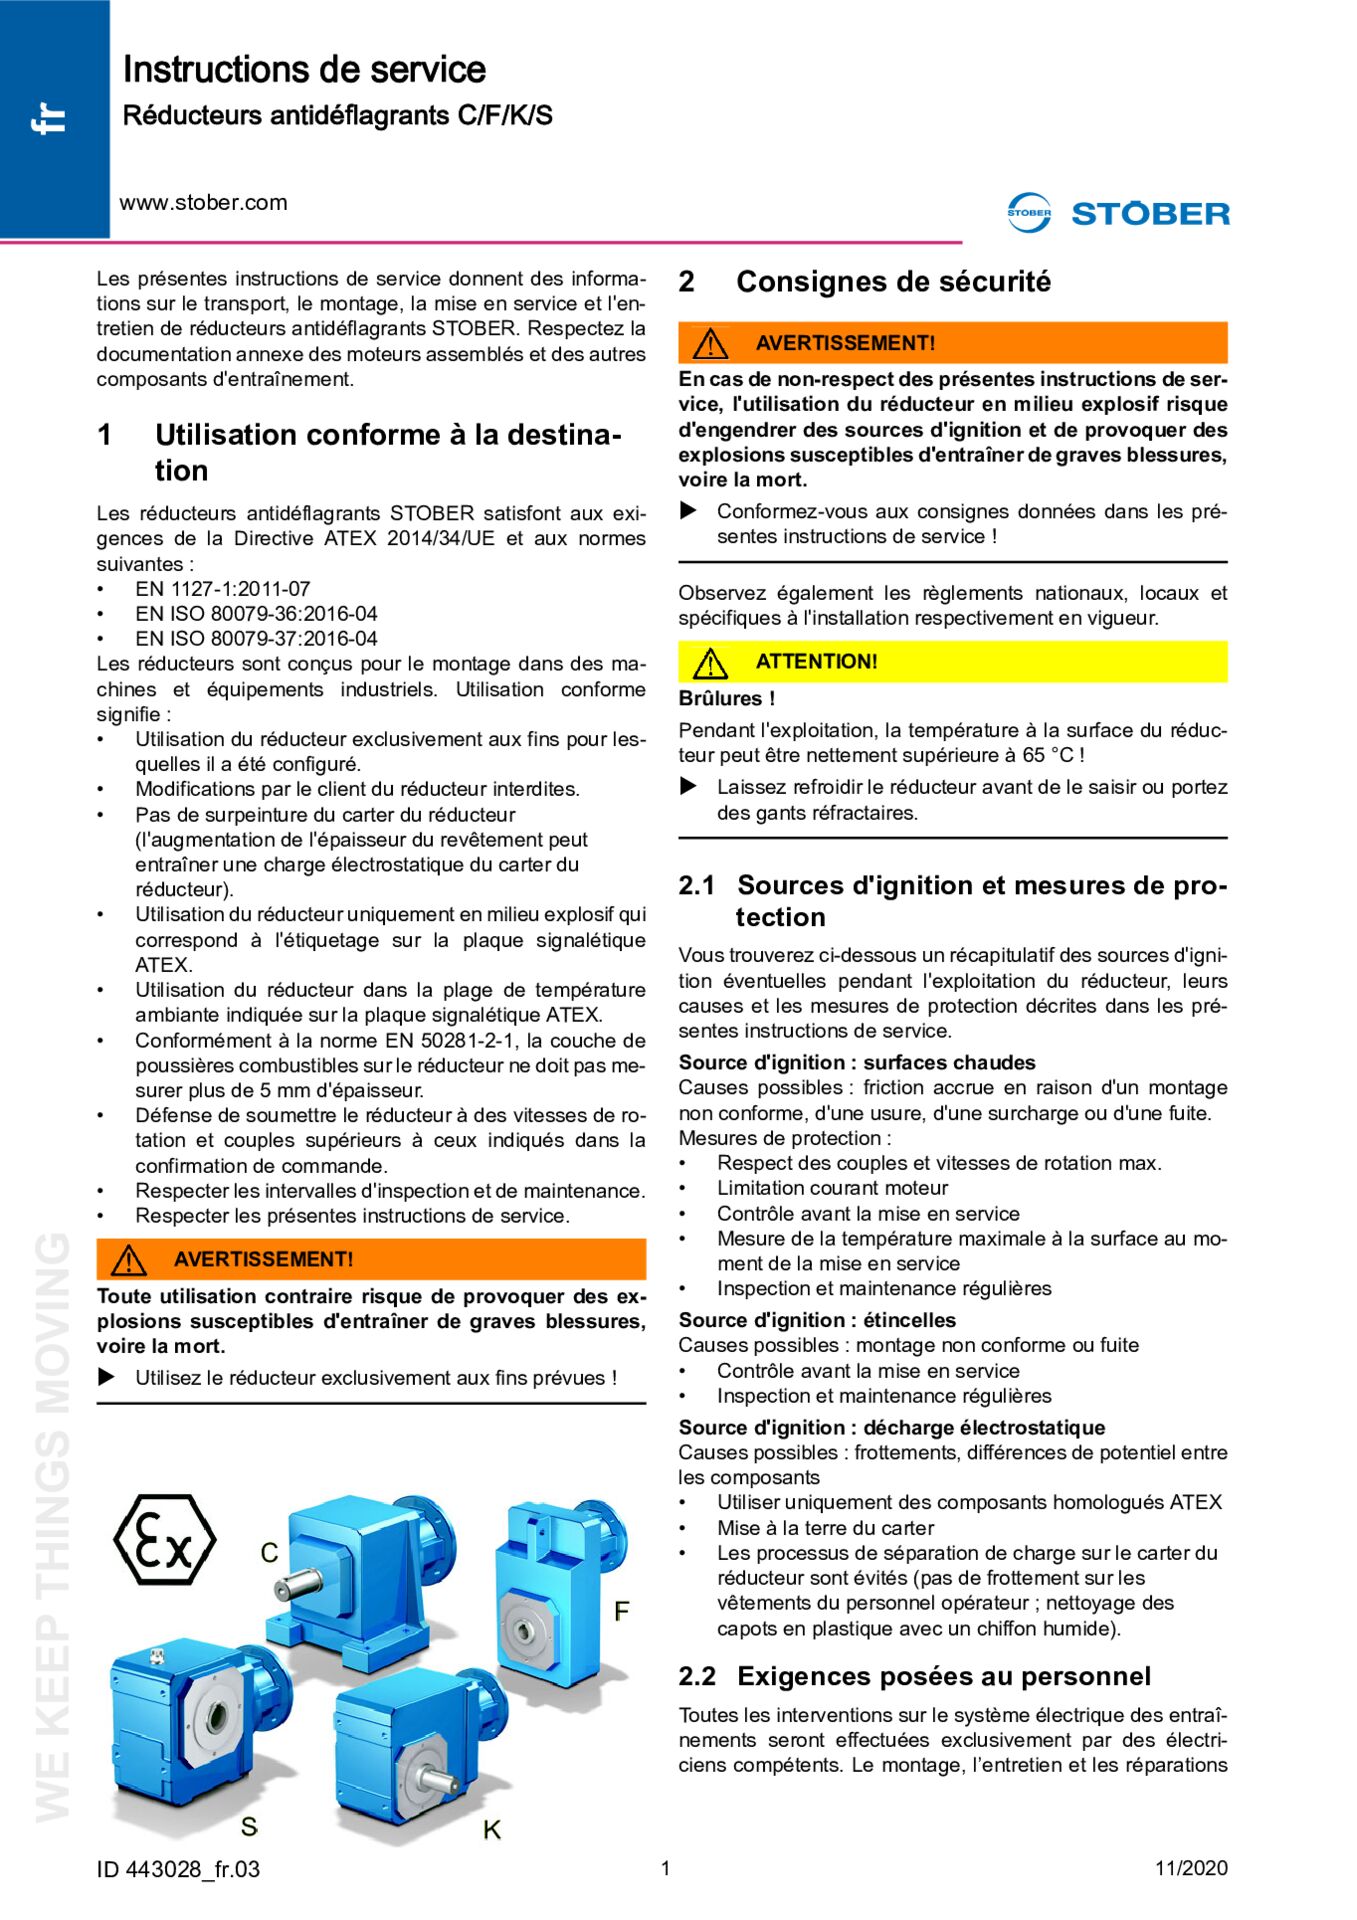 Instructions de service Réducteurs antidéflagrants (ATEX) C/F/K/S